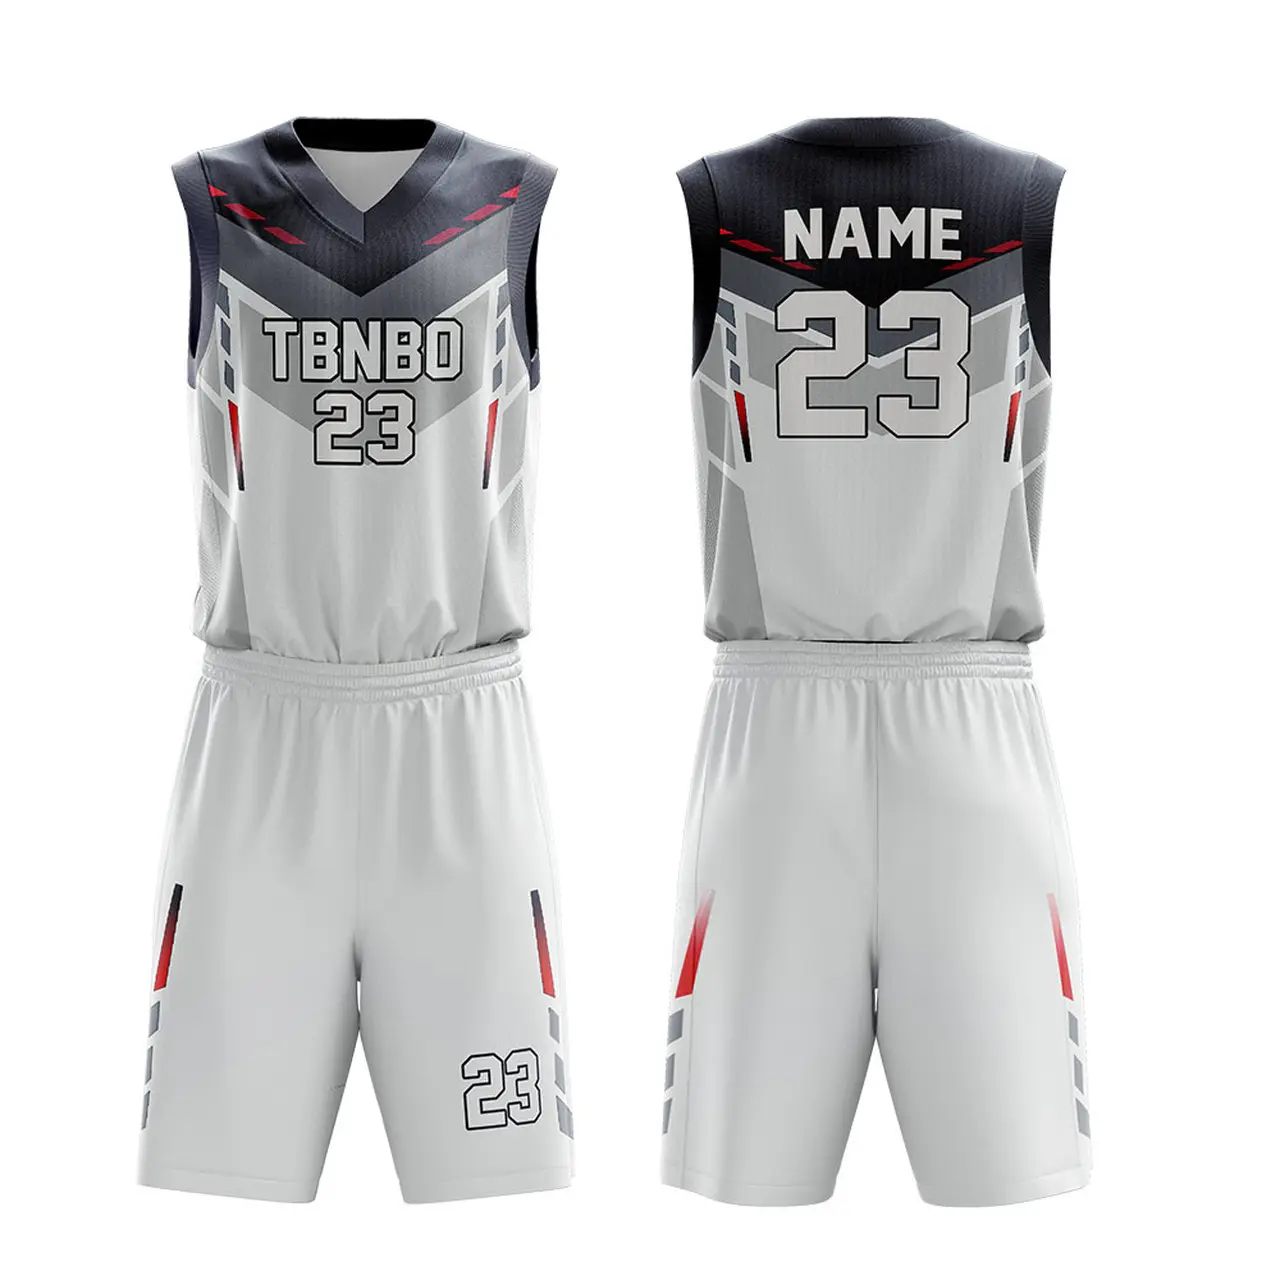 Uniforme de basket-ball réversible le meilleur Design, uniforme de collège blanc par Sublimation, nouvelle collection